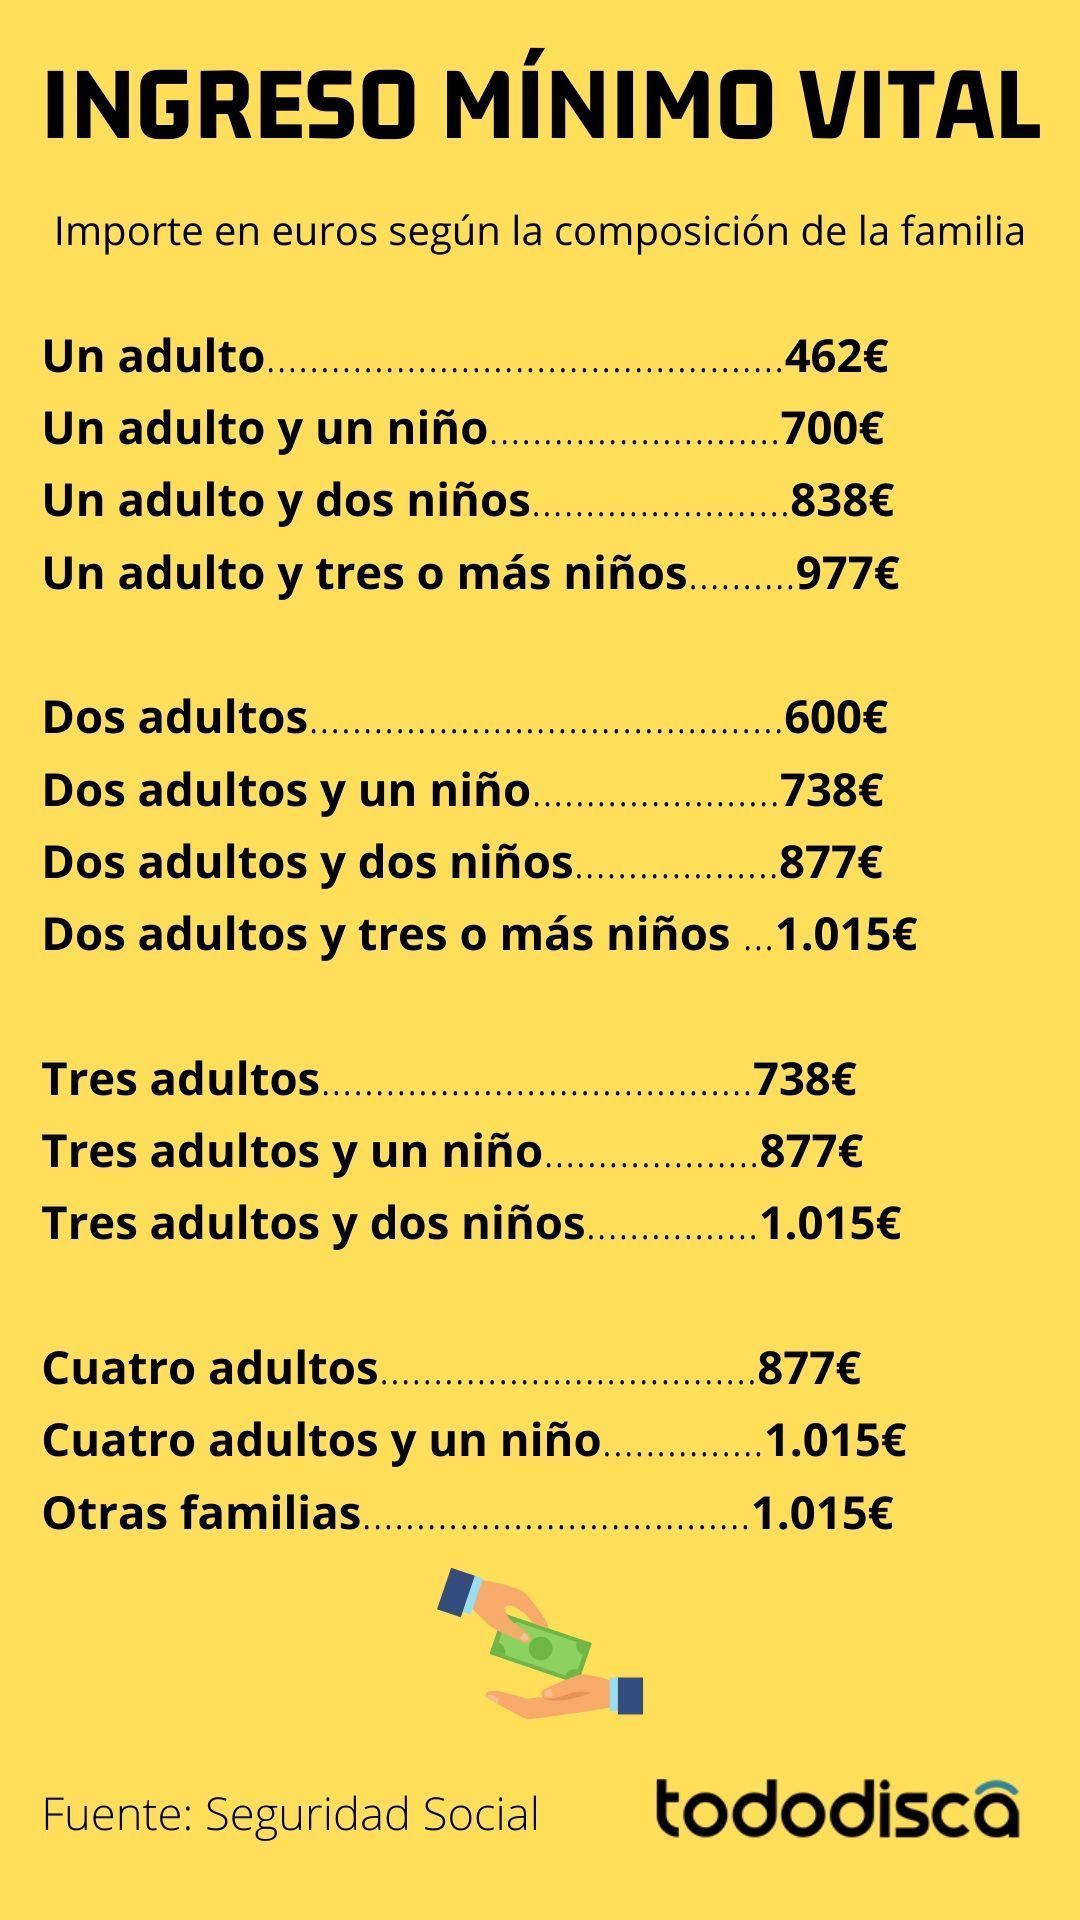 Infografia con el Importe en euros según la composición de la familia en el Ingreso Mínimo Vital | Tododisca